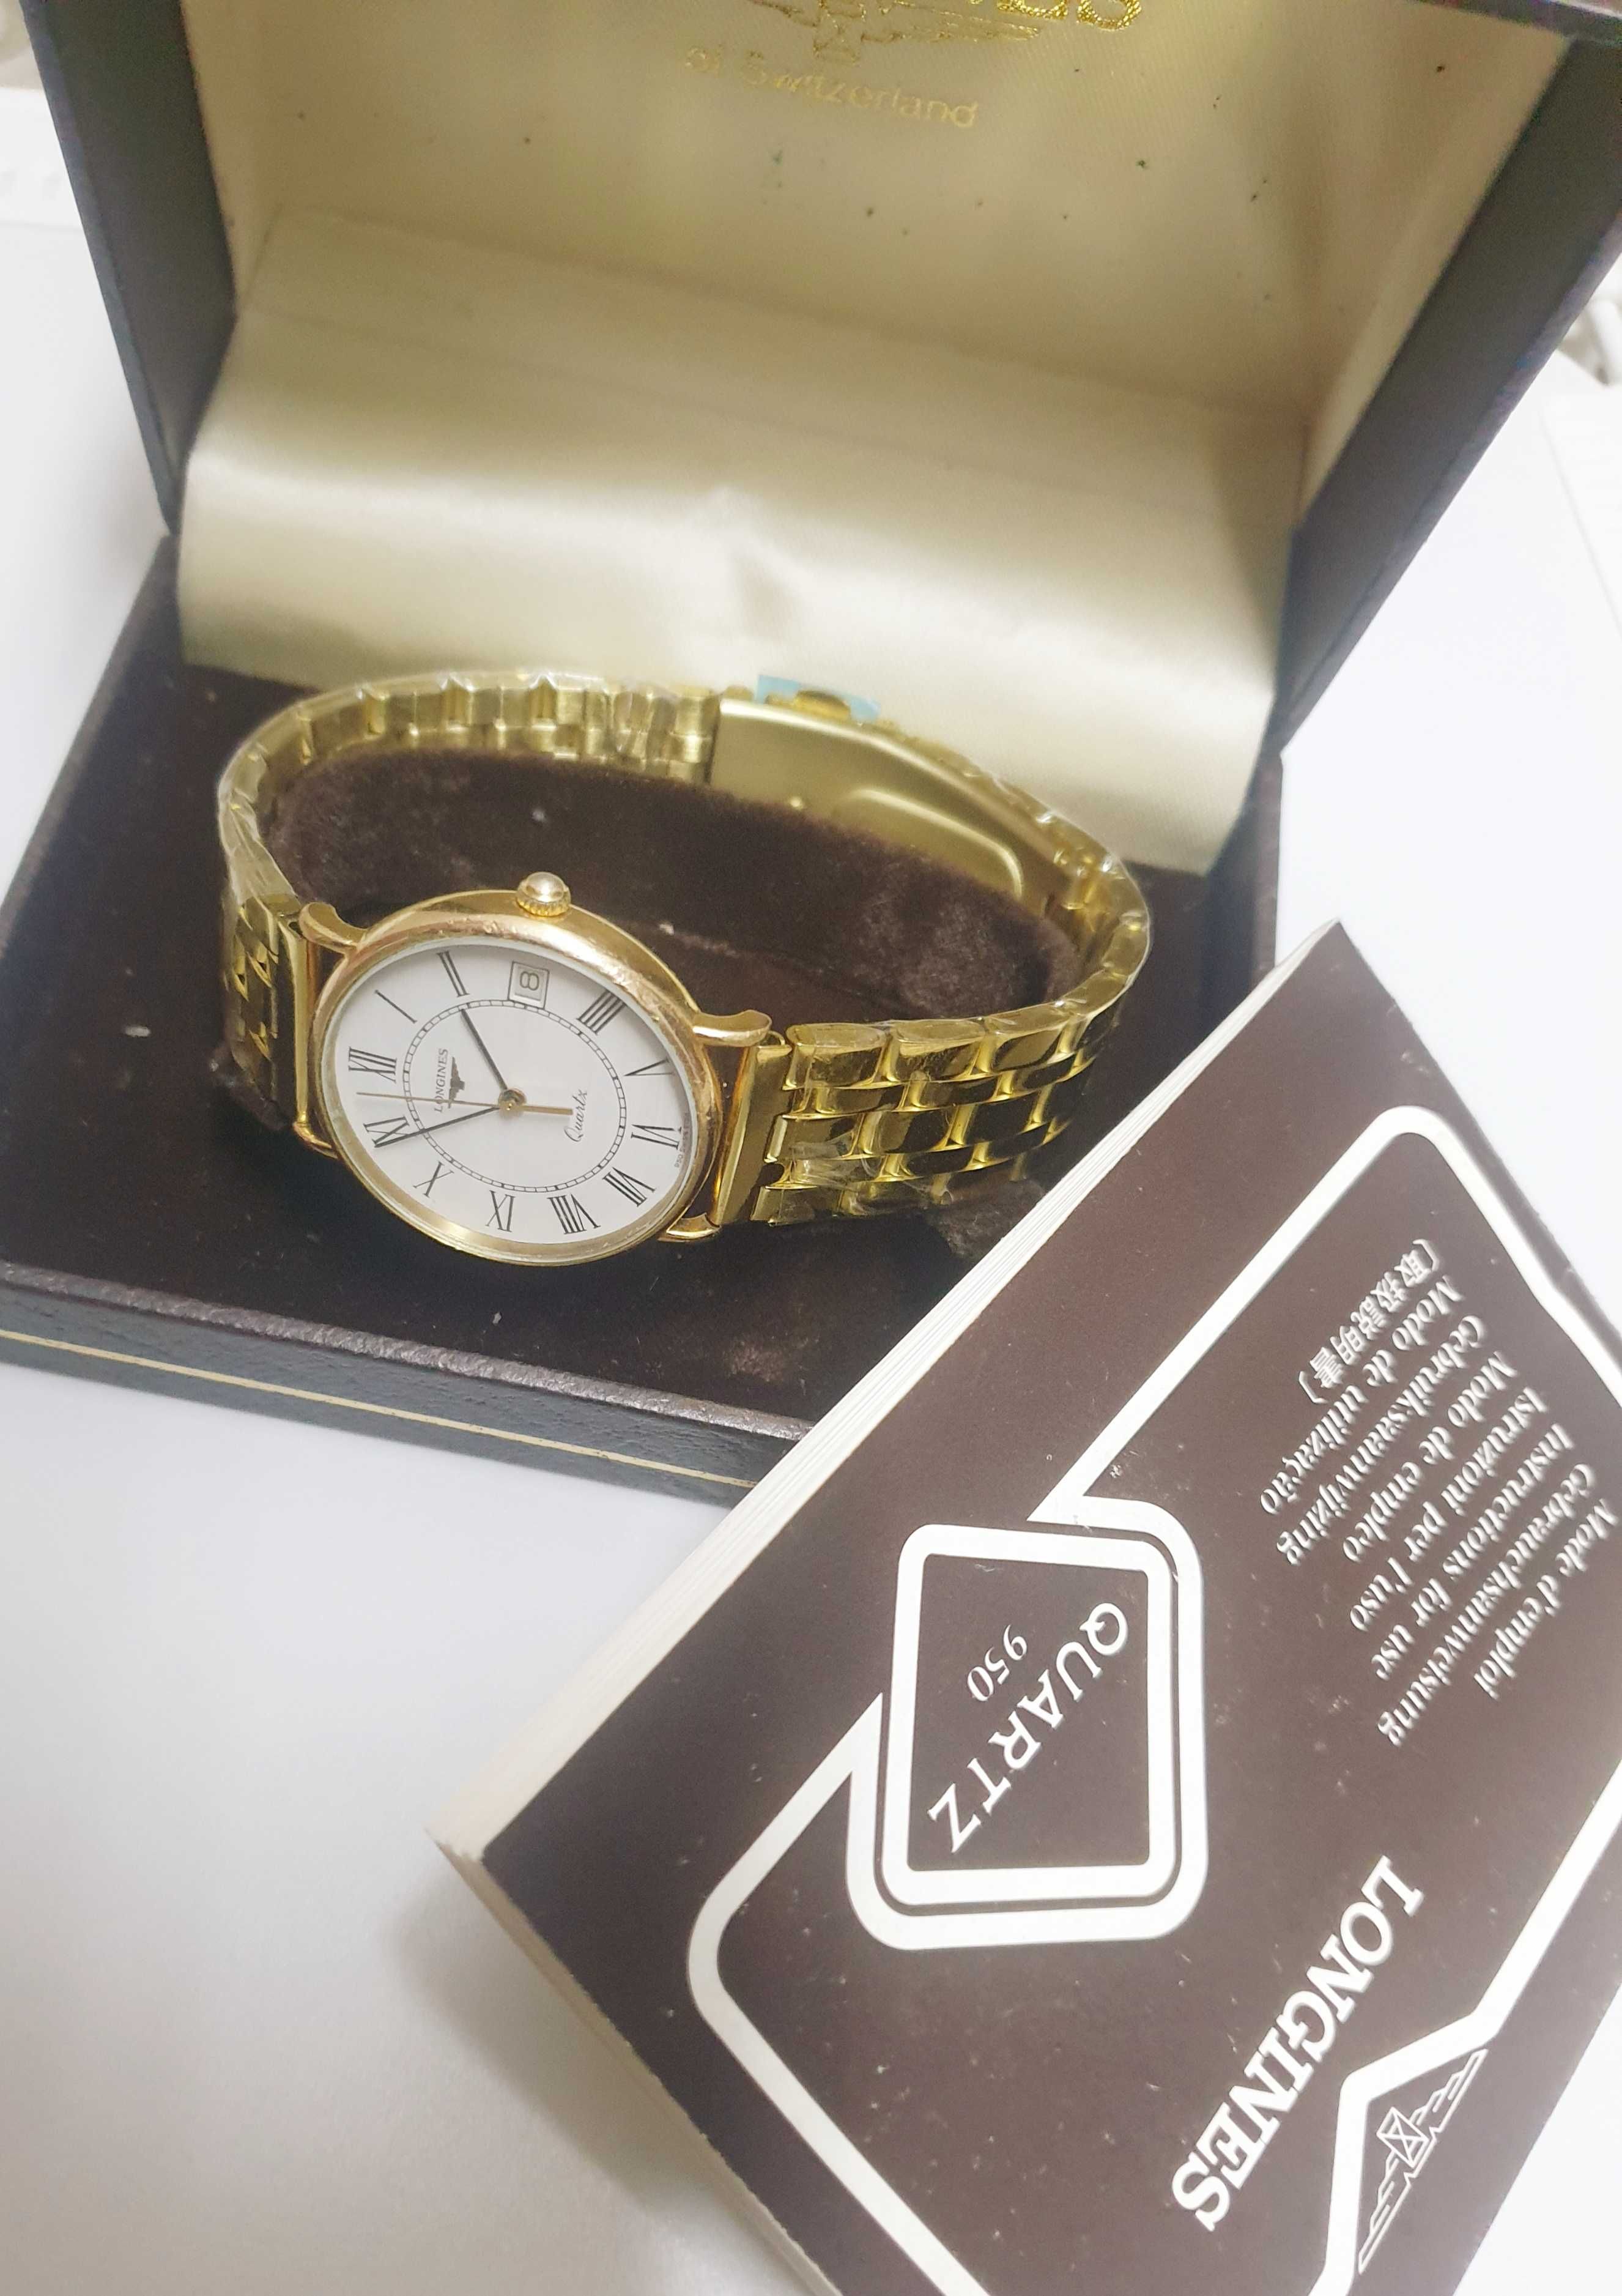 LONGINES oryginalny pozlacany meski zegarek kwarcowy Vintage SWISS